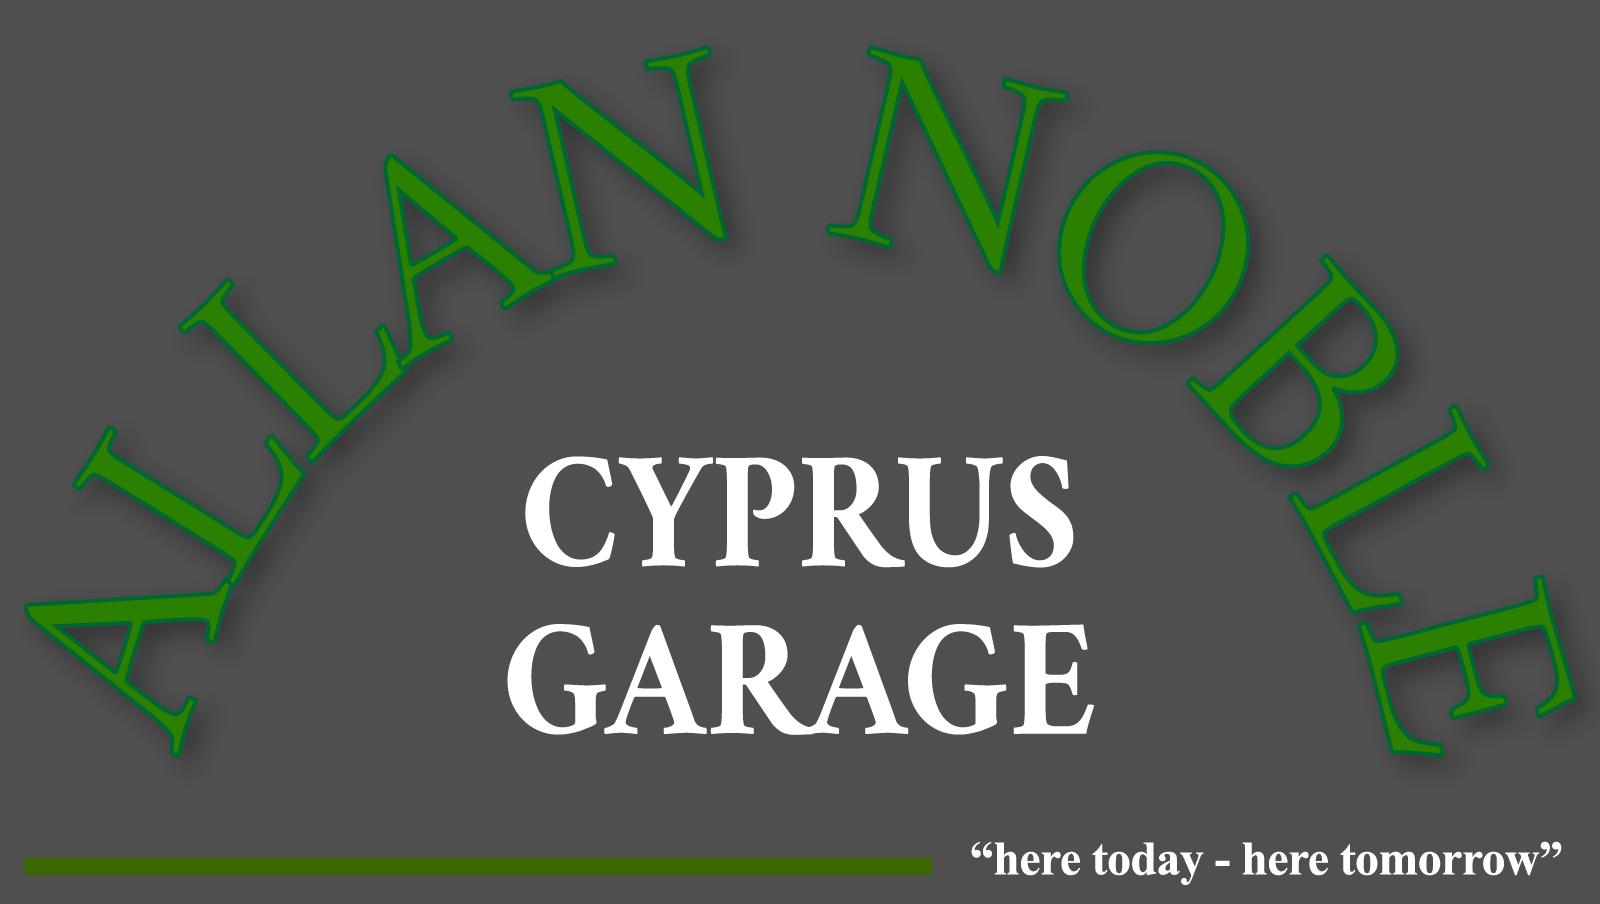 Cyprus Garage logo